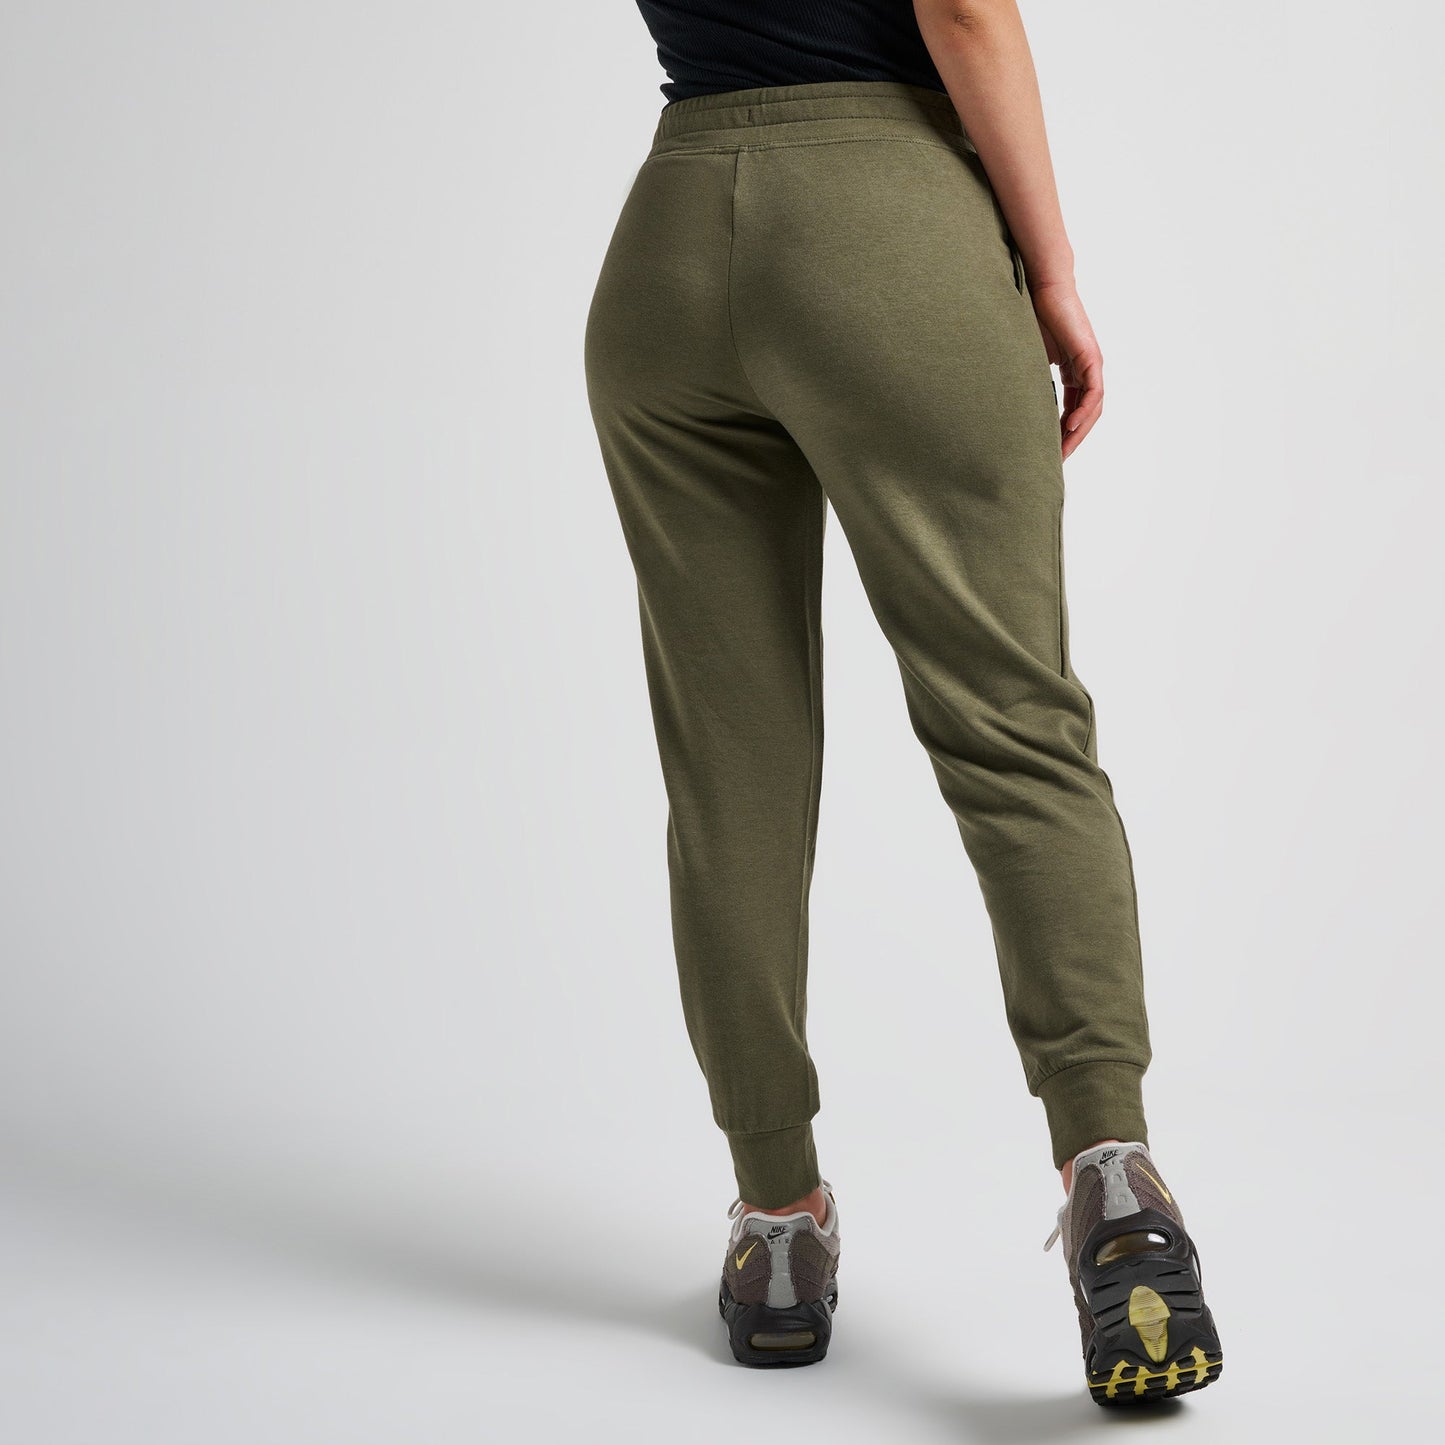 Pantalon de jogging femme vert olive Shelter de Stance | modèle